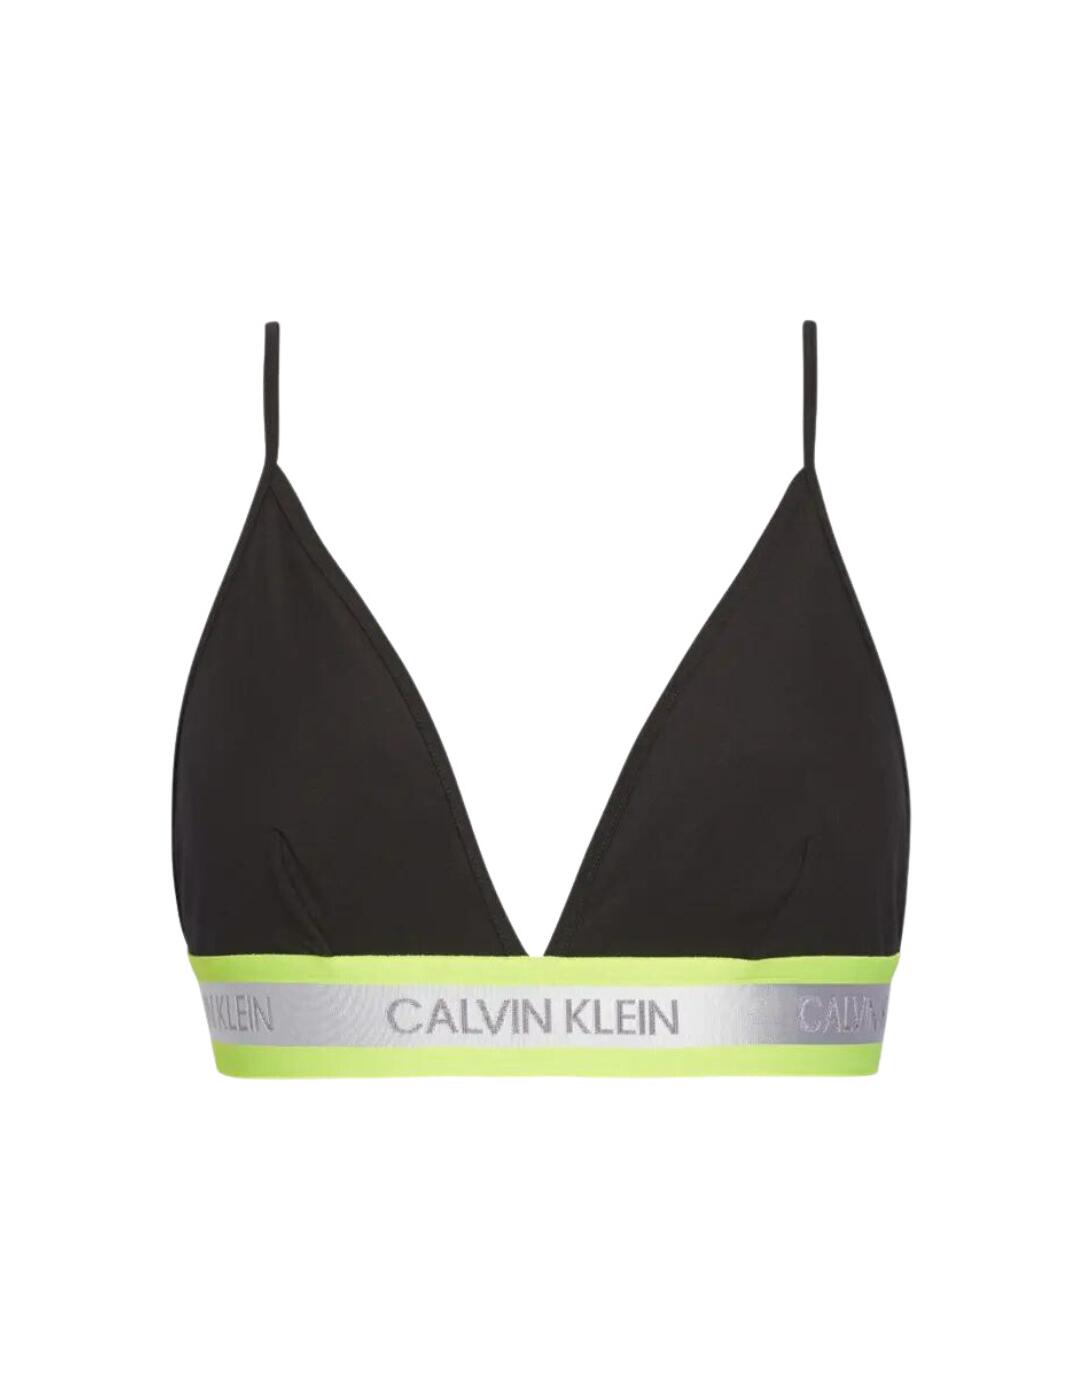 Calvin Klein - 365 Neon Gift set - 2 Pack Pink Lingerie - Zavvi UK